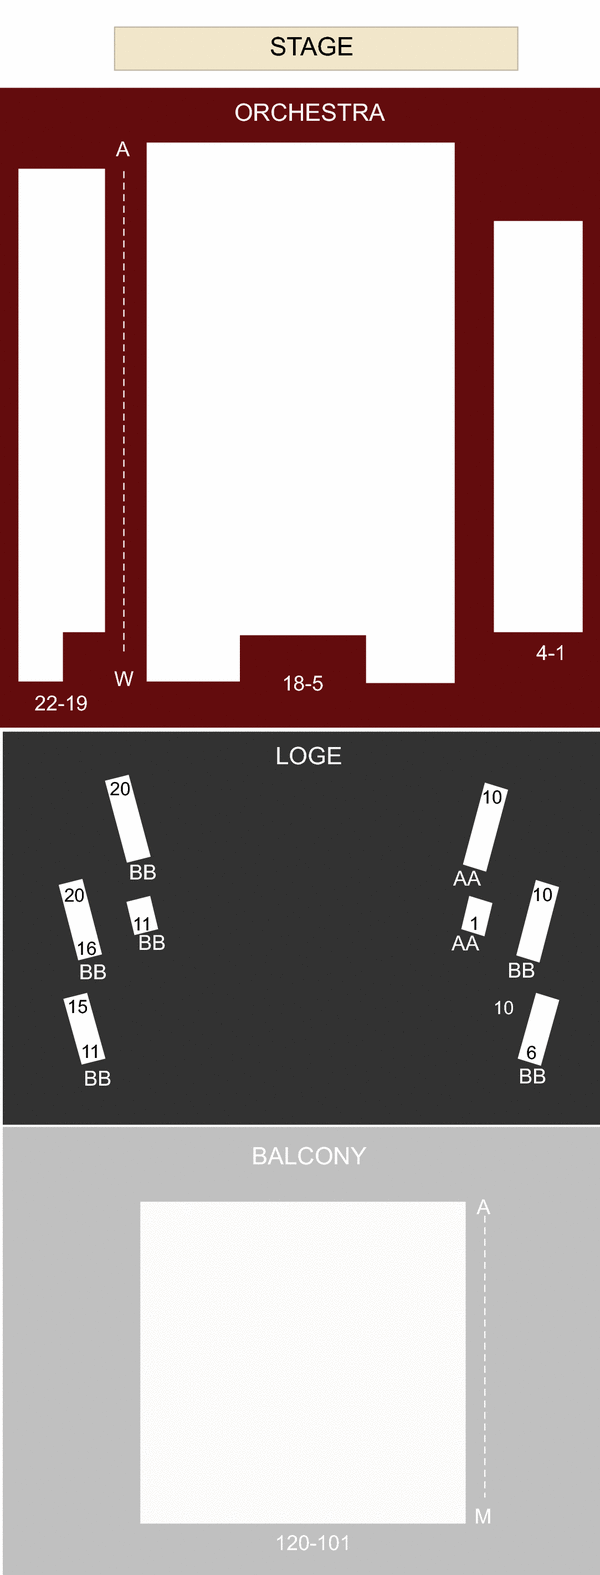 Panasonic Theatre Seating Chart